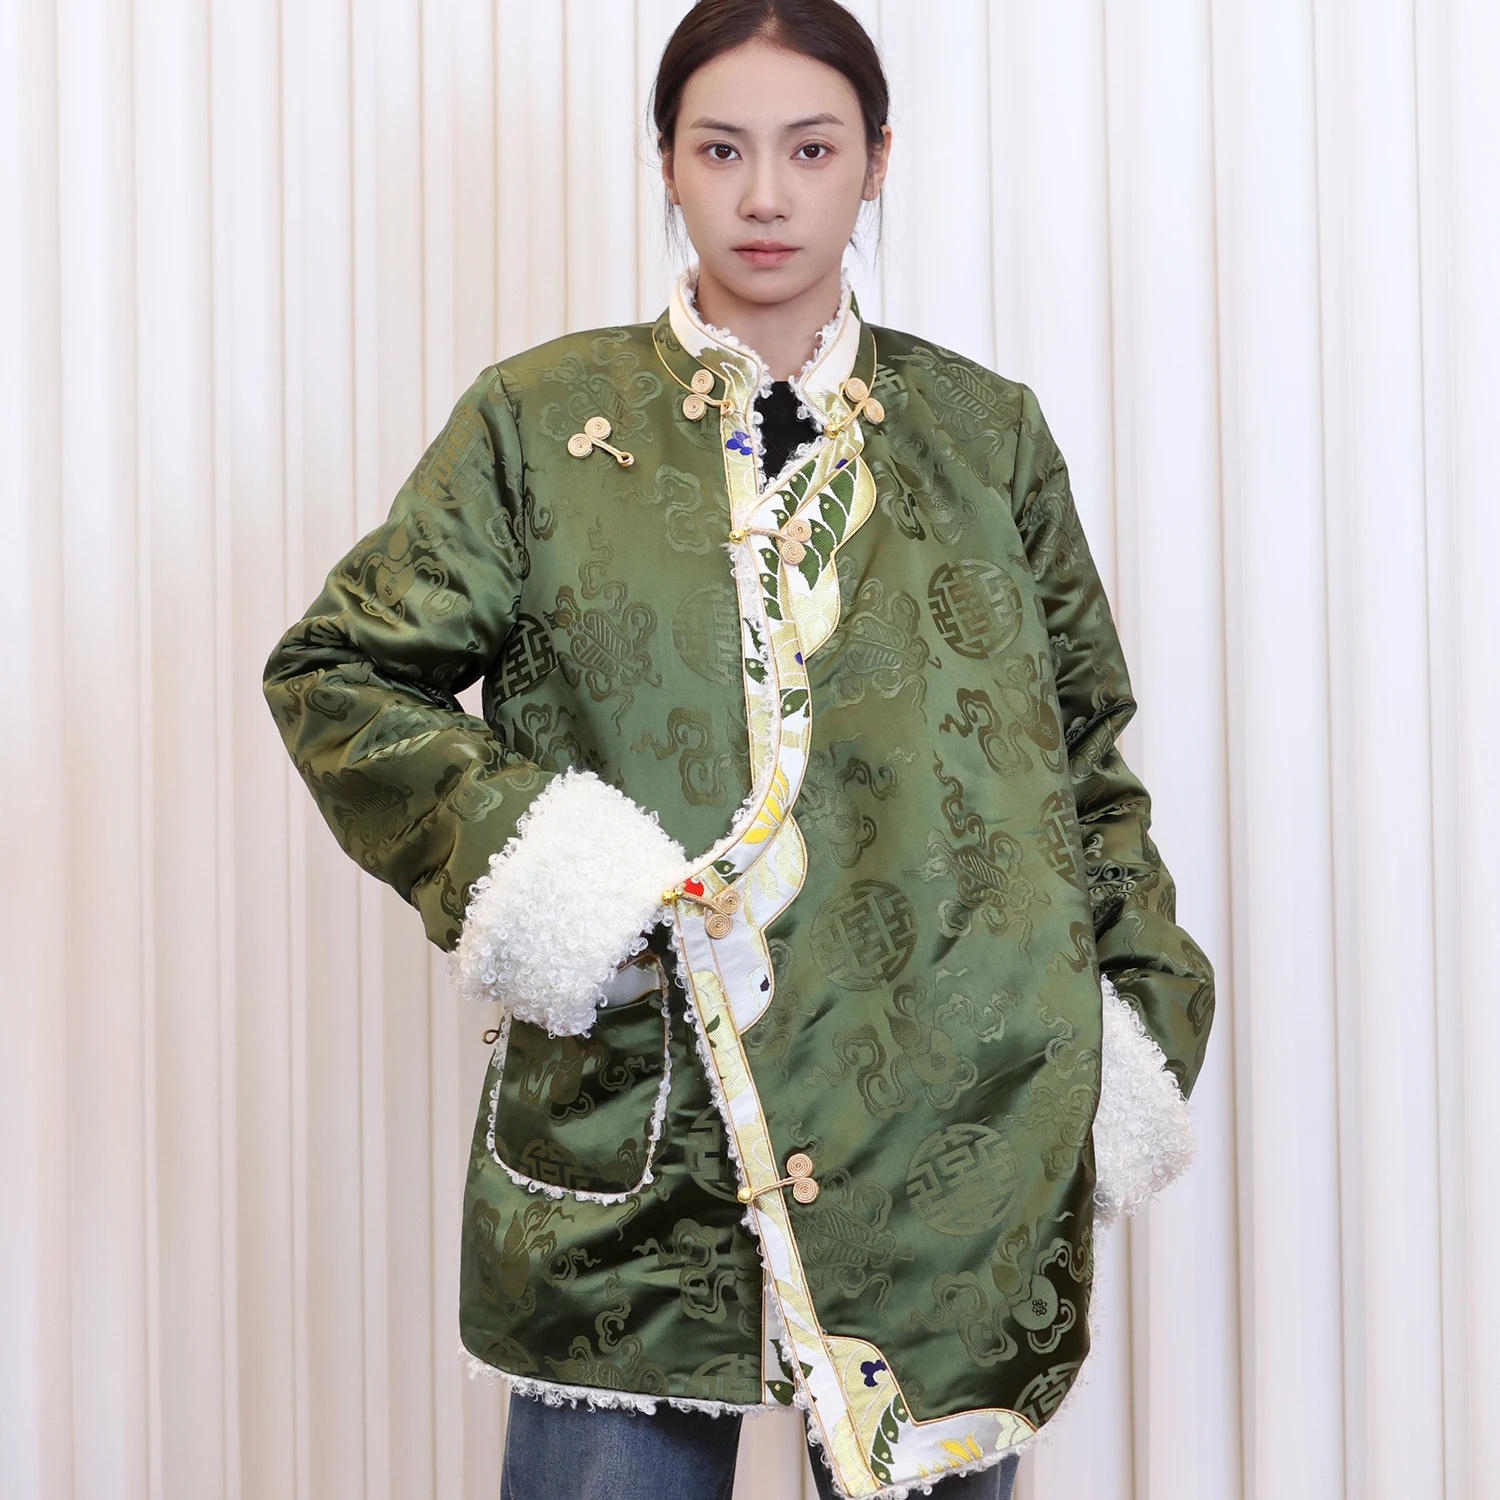  Зеленый Топ Зимнее пальто с хлопковой подкладкой Женская утолщенная хлопковая подкладка Тибетская одежда День Повседневная одежда Куртка Изображение 1